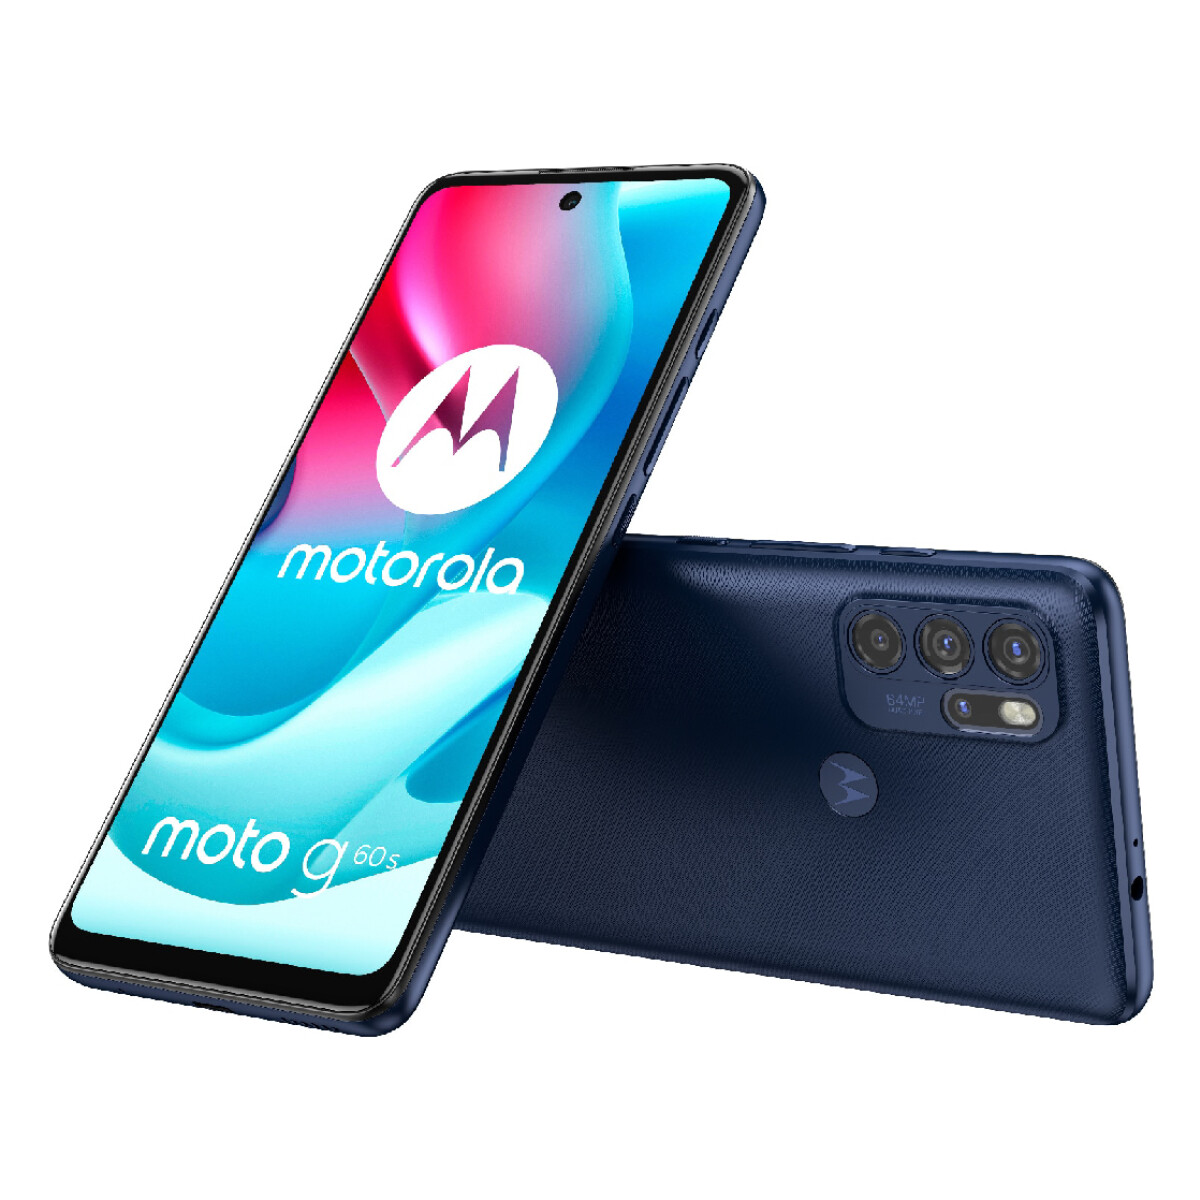 Motorola g60s 128gb / 6gb ram dual sim Azul